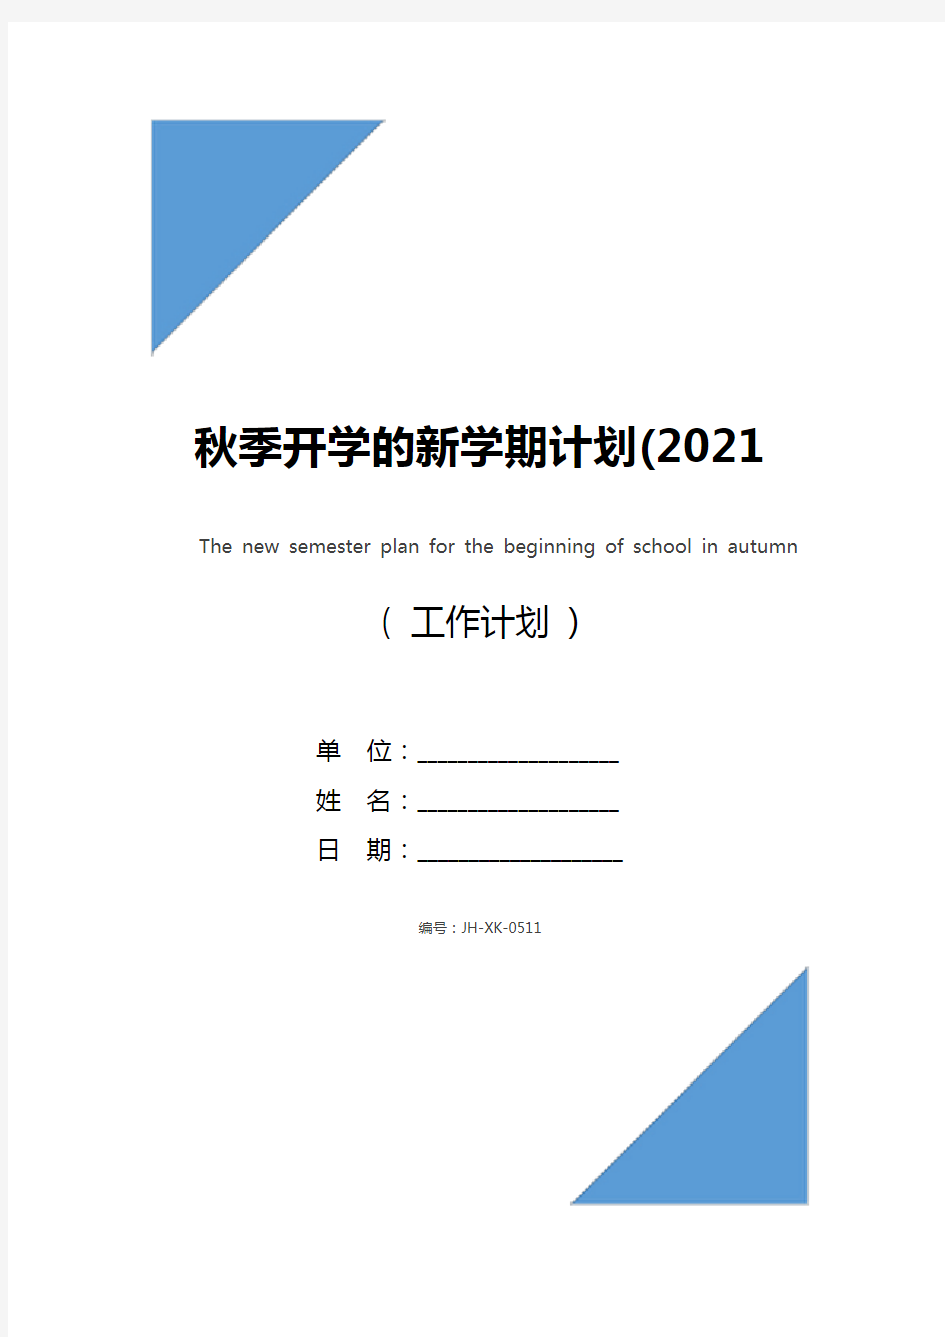 秋季开学的新学期计划(2021版)